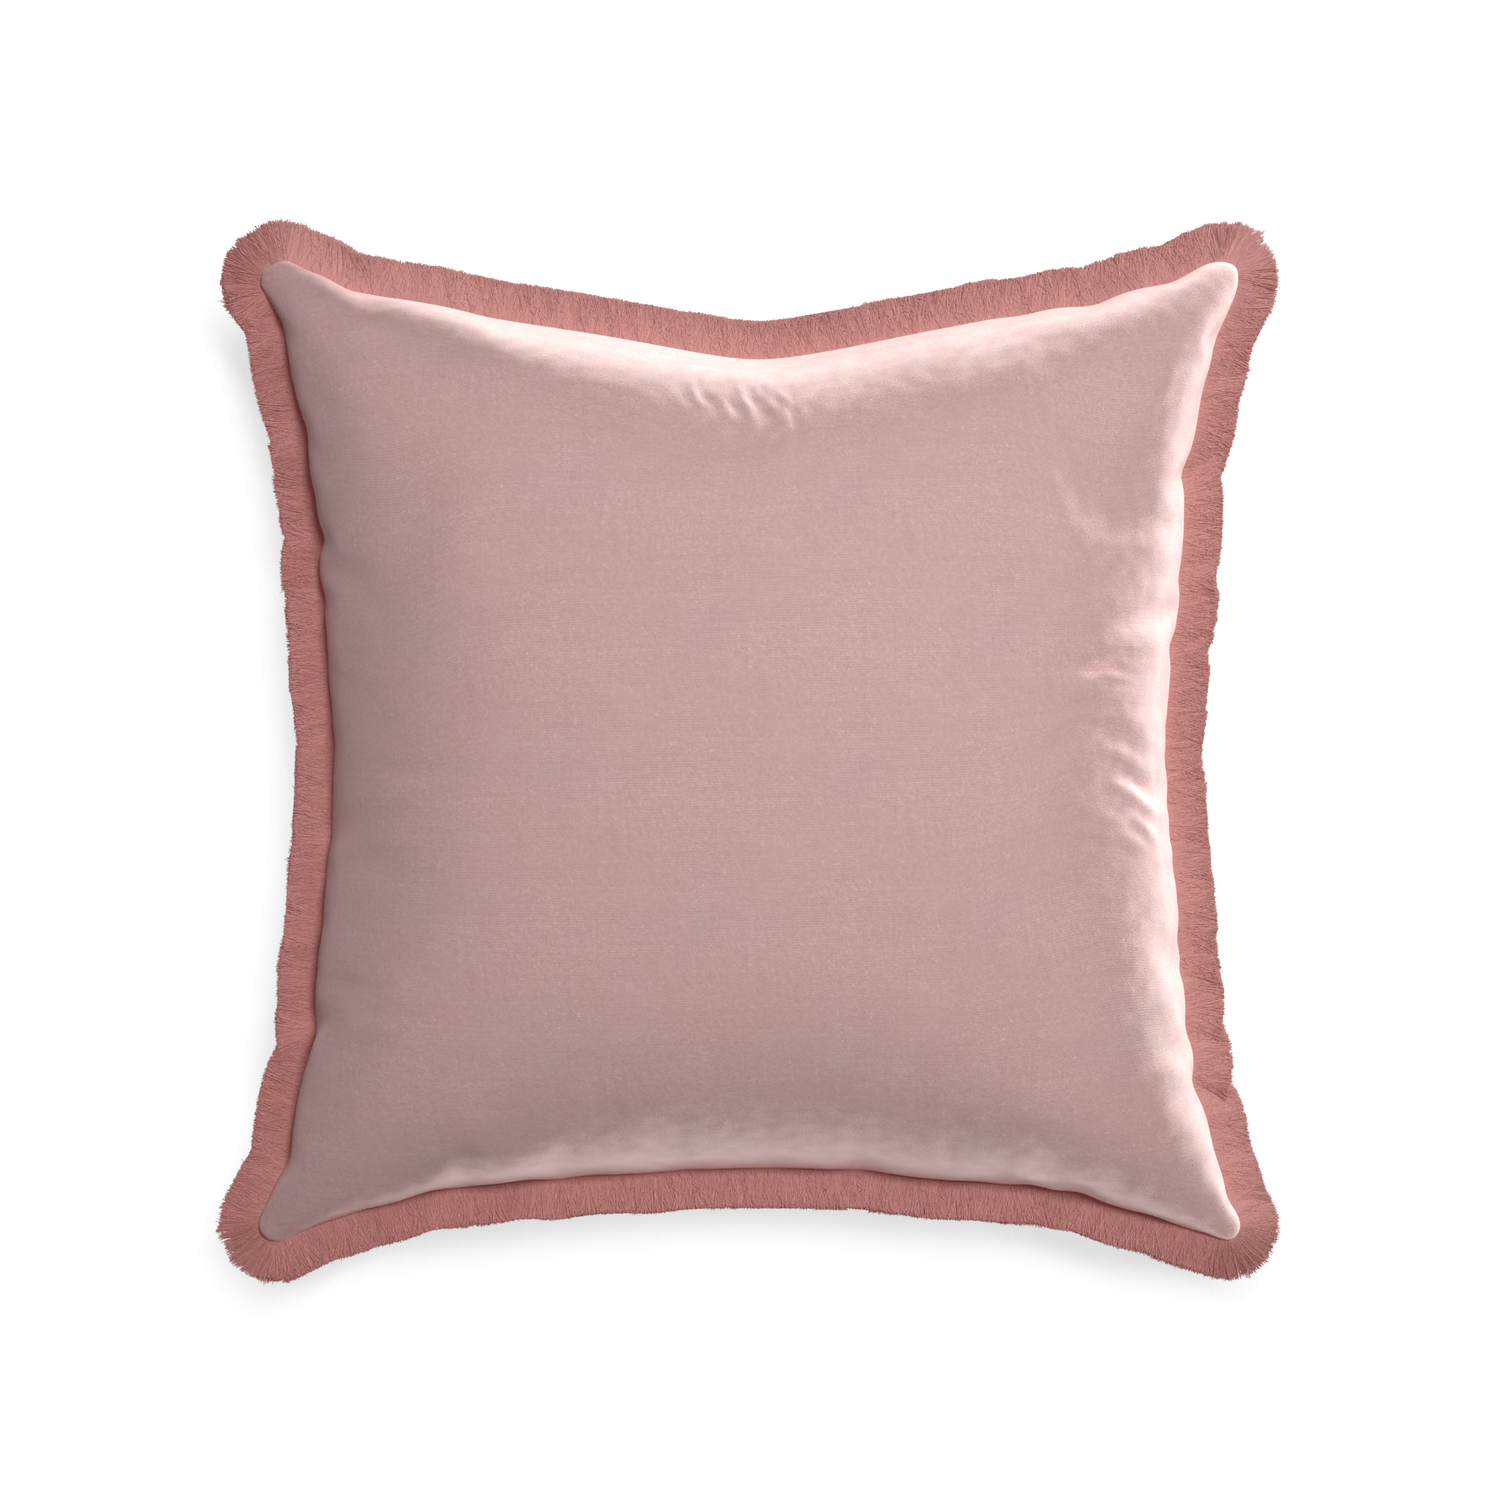 22-square mauve velvet custom pillow with d fringe on white background